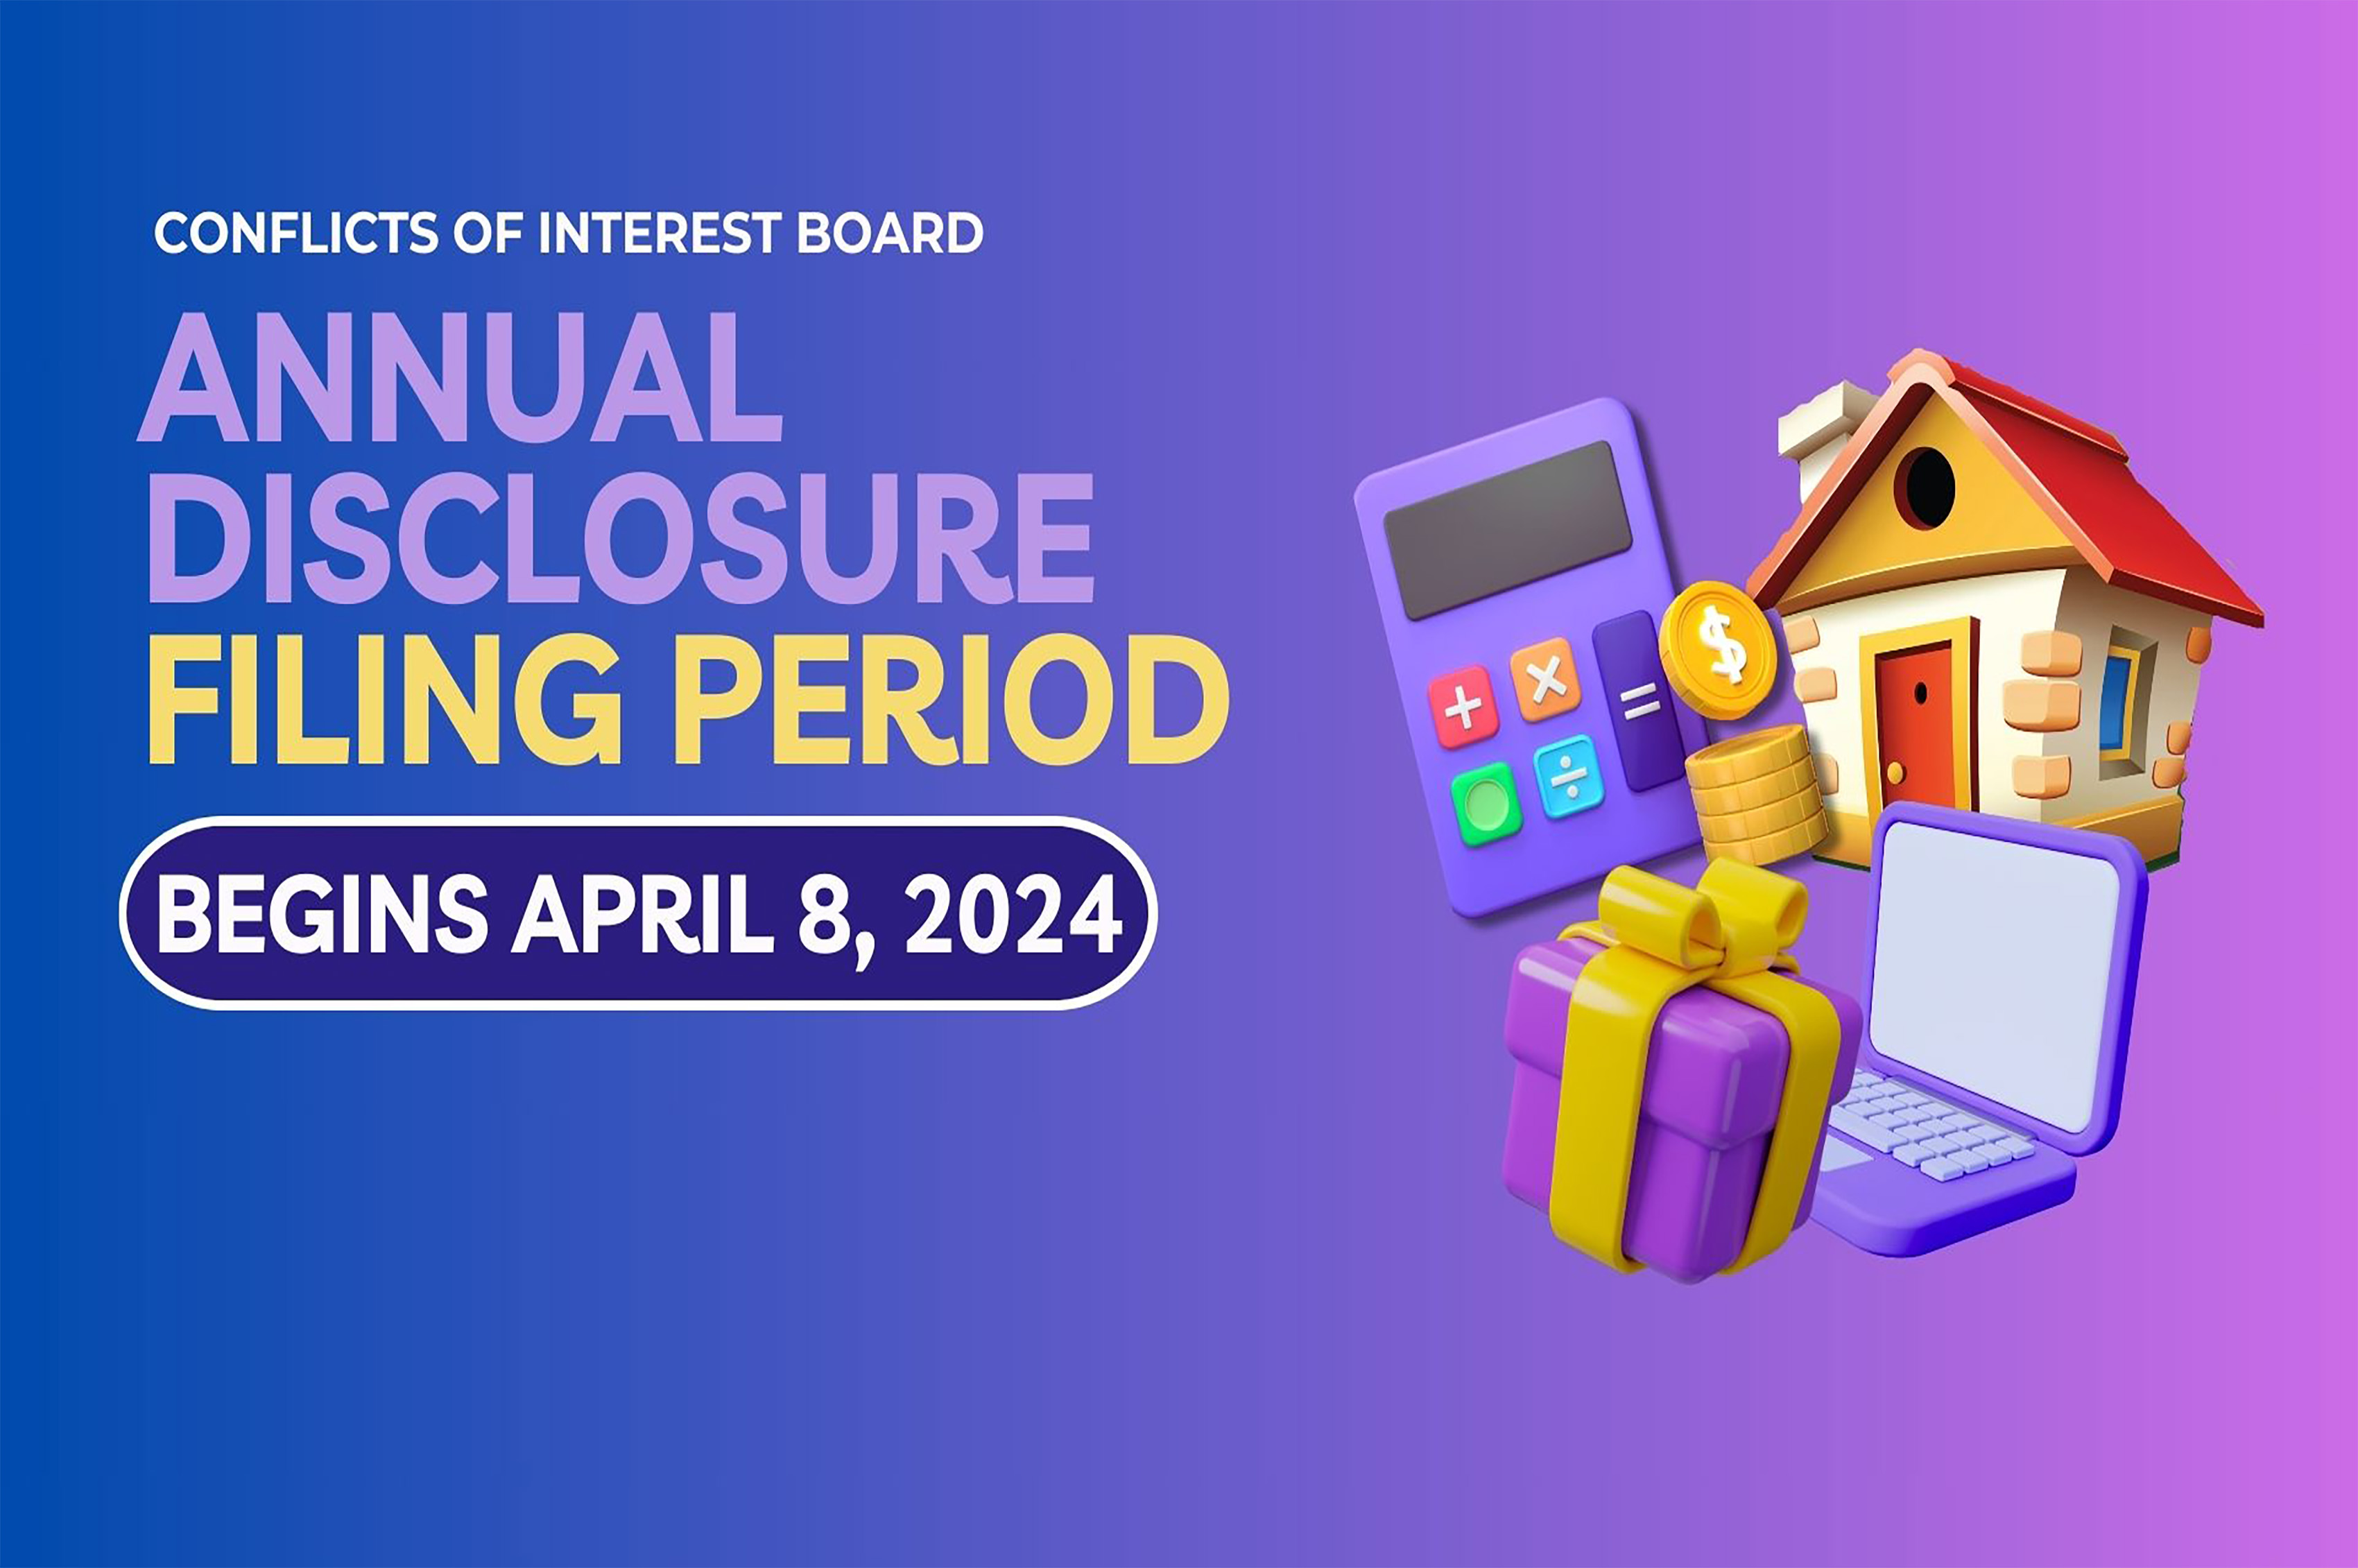 Annual Disclosure Filing Period begins April 8, 2024
                                           